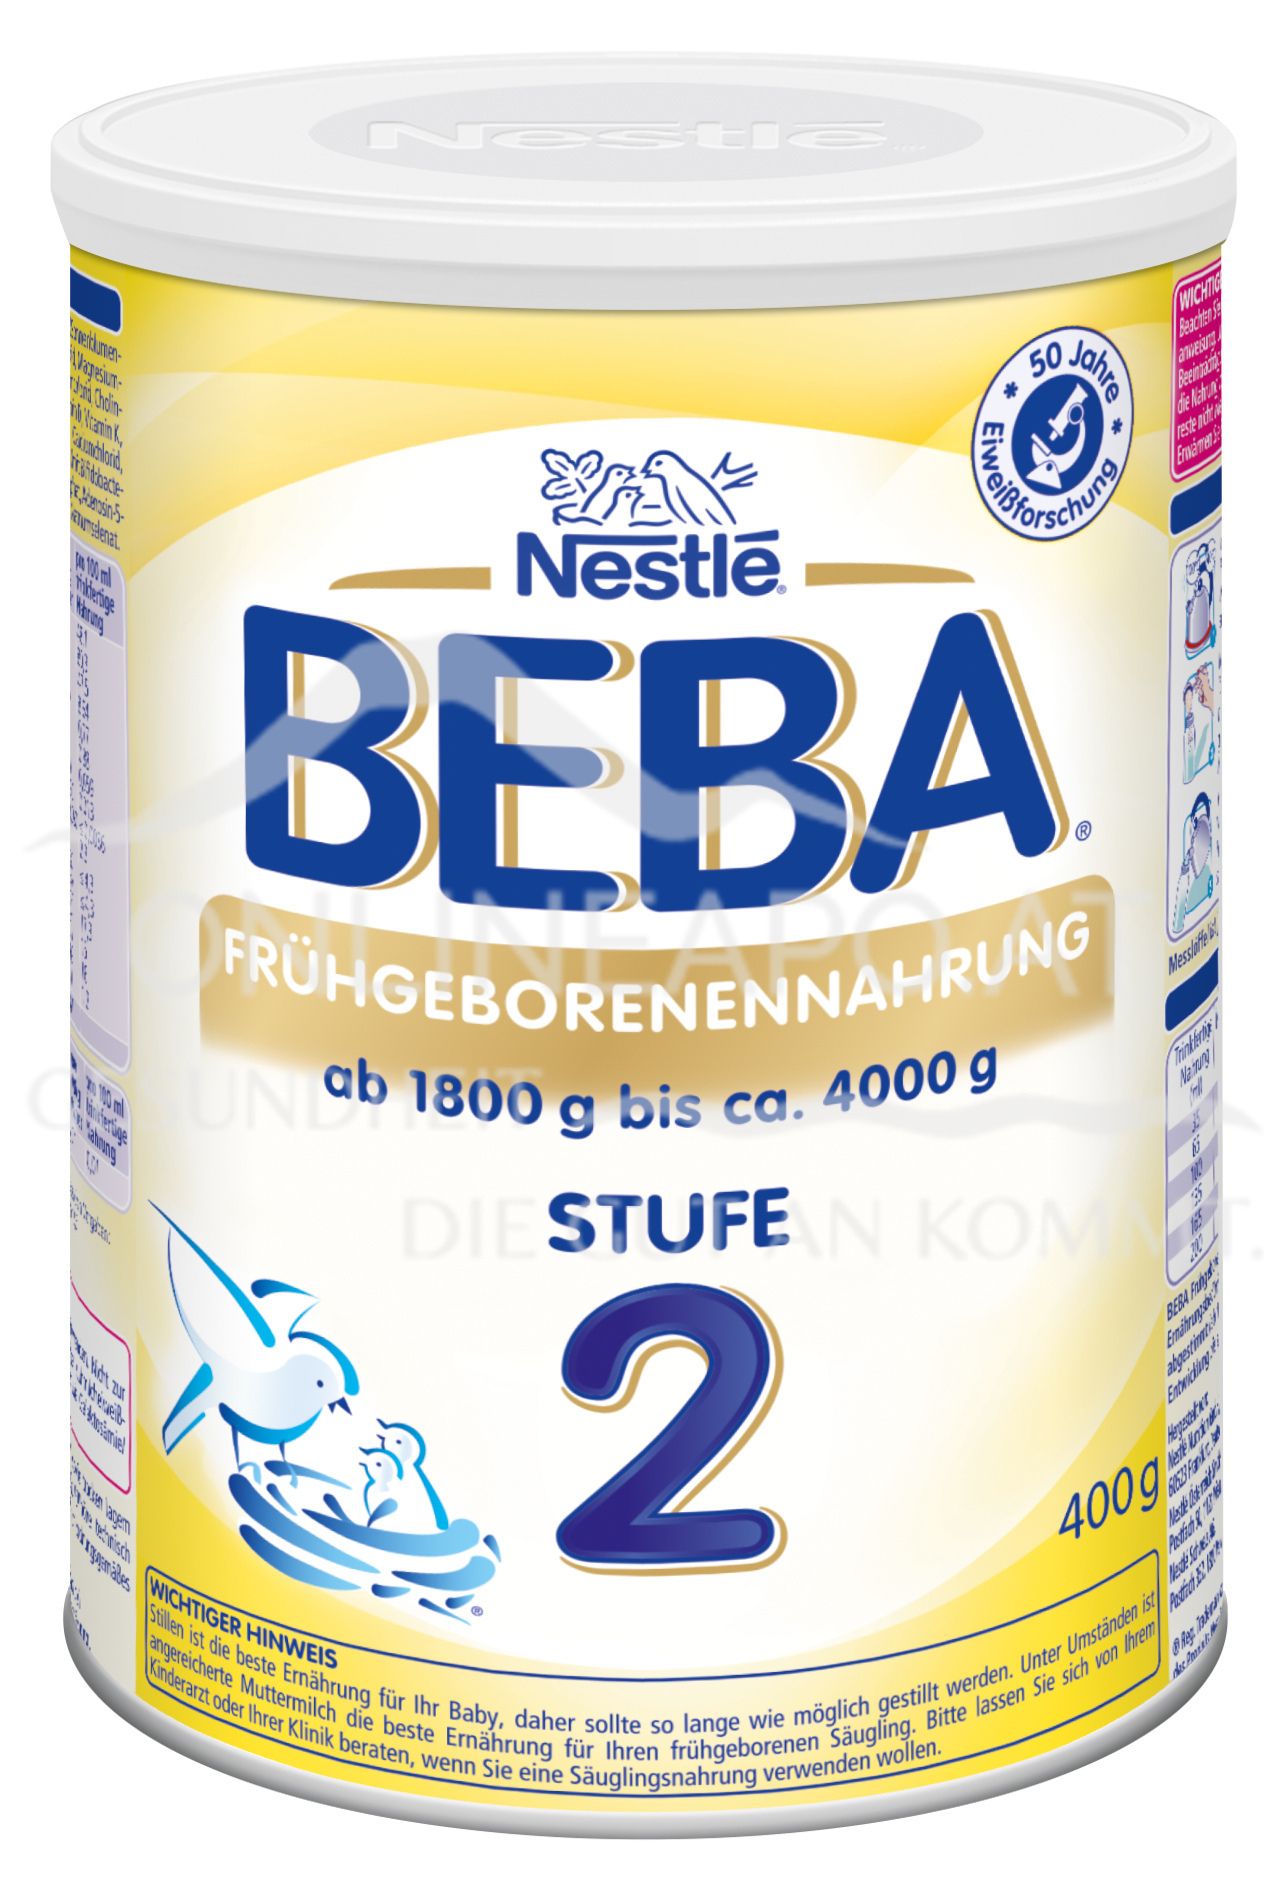 Nestlé BEBA Frühgeborenennahrung Stufe 2